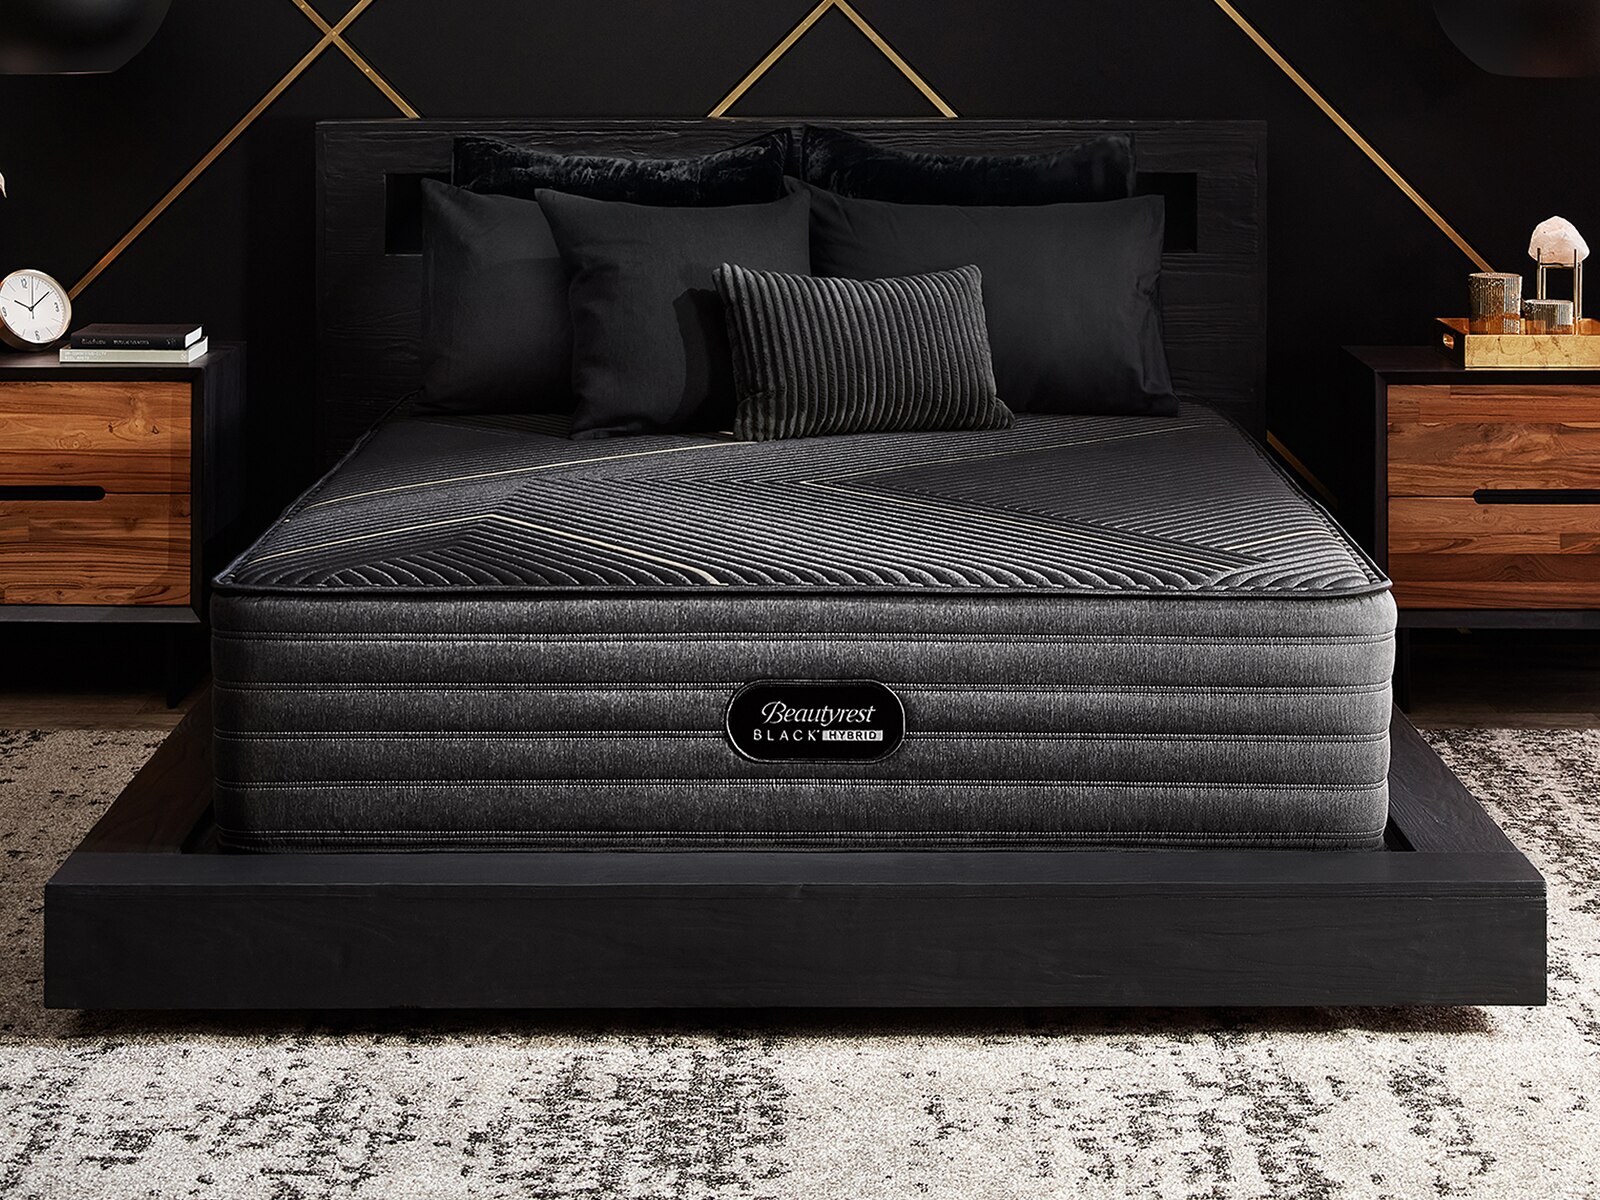 beautyrest black hybrid kx-class mattress